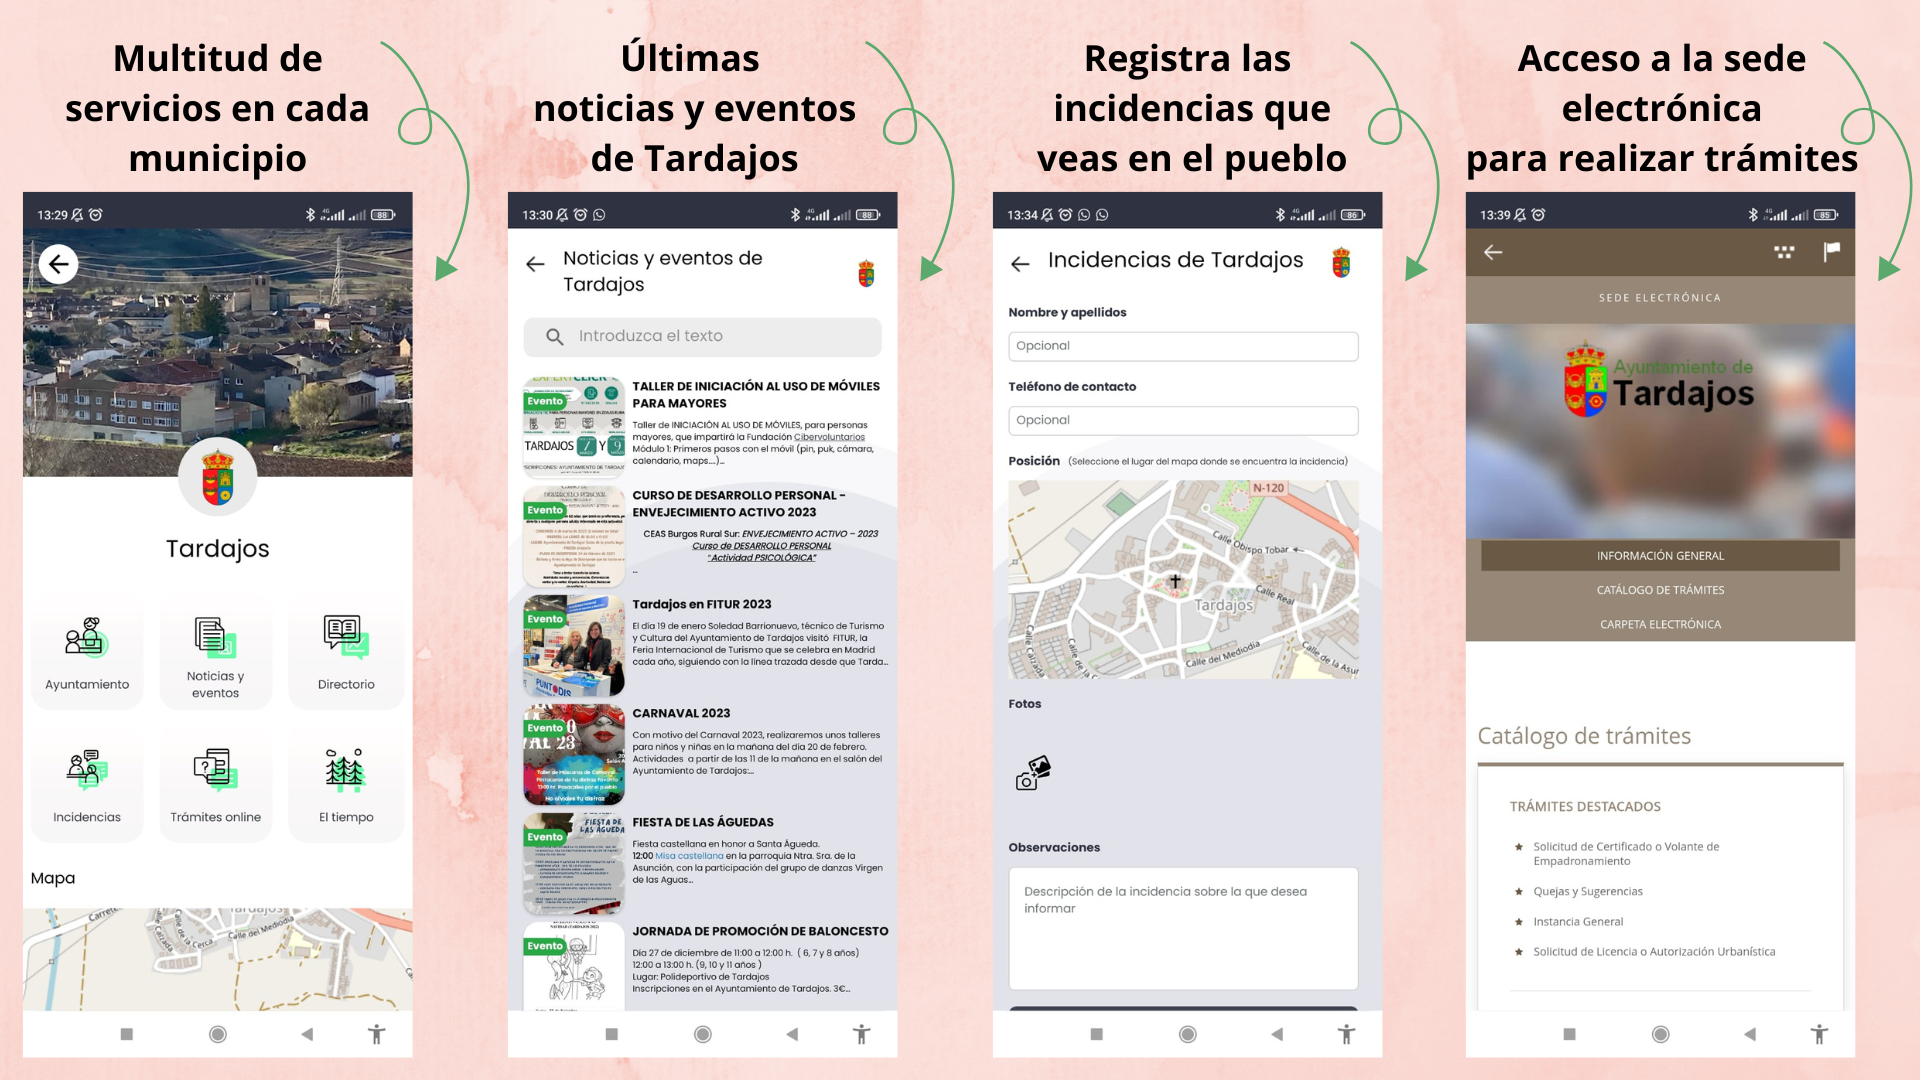 Información de los servicios que ofrece la APP Mi Pueblo, como información básica de Tardajos, últimas noticias y eventos, posibilidad de registrar incidencias y acceso a la sede electrónica.